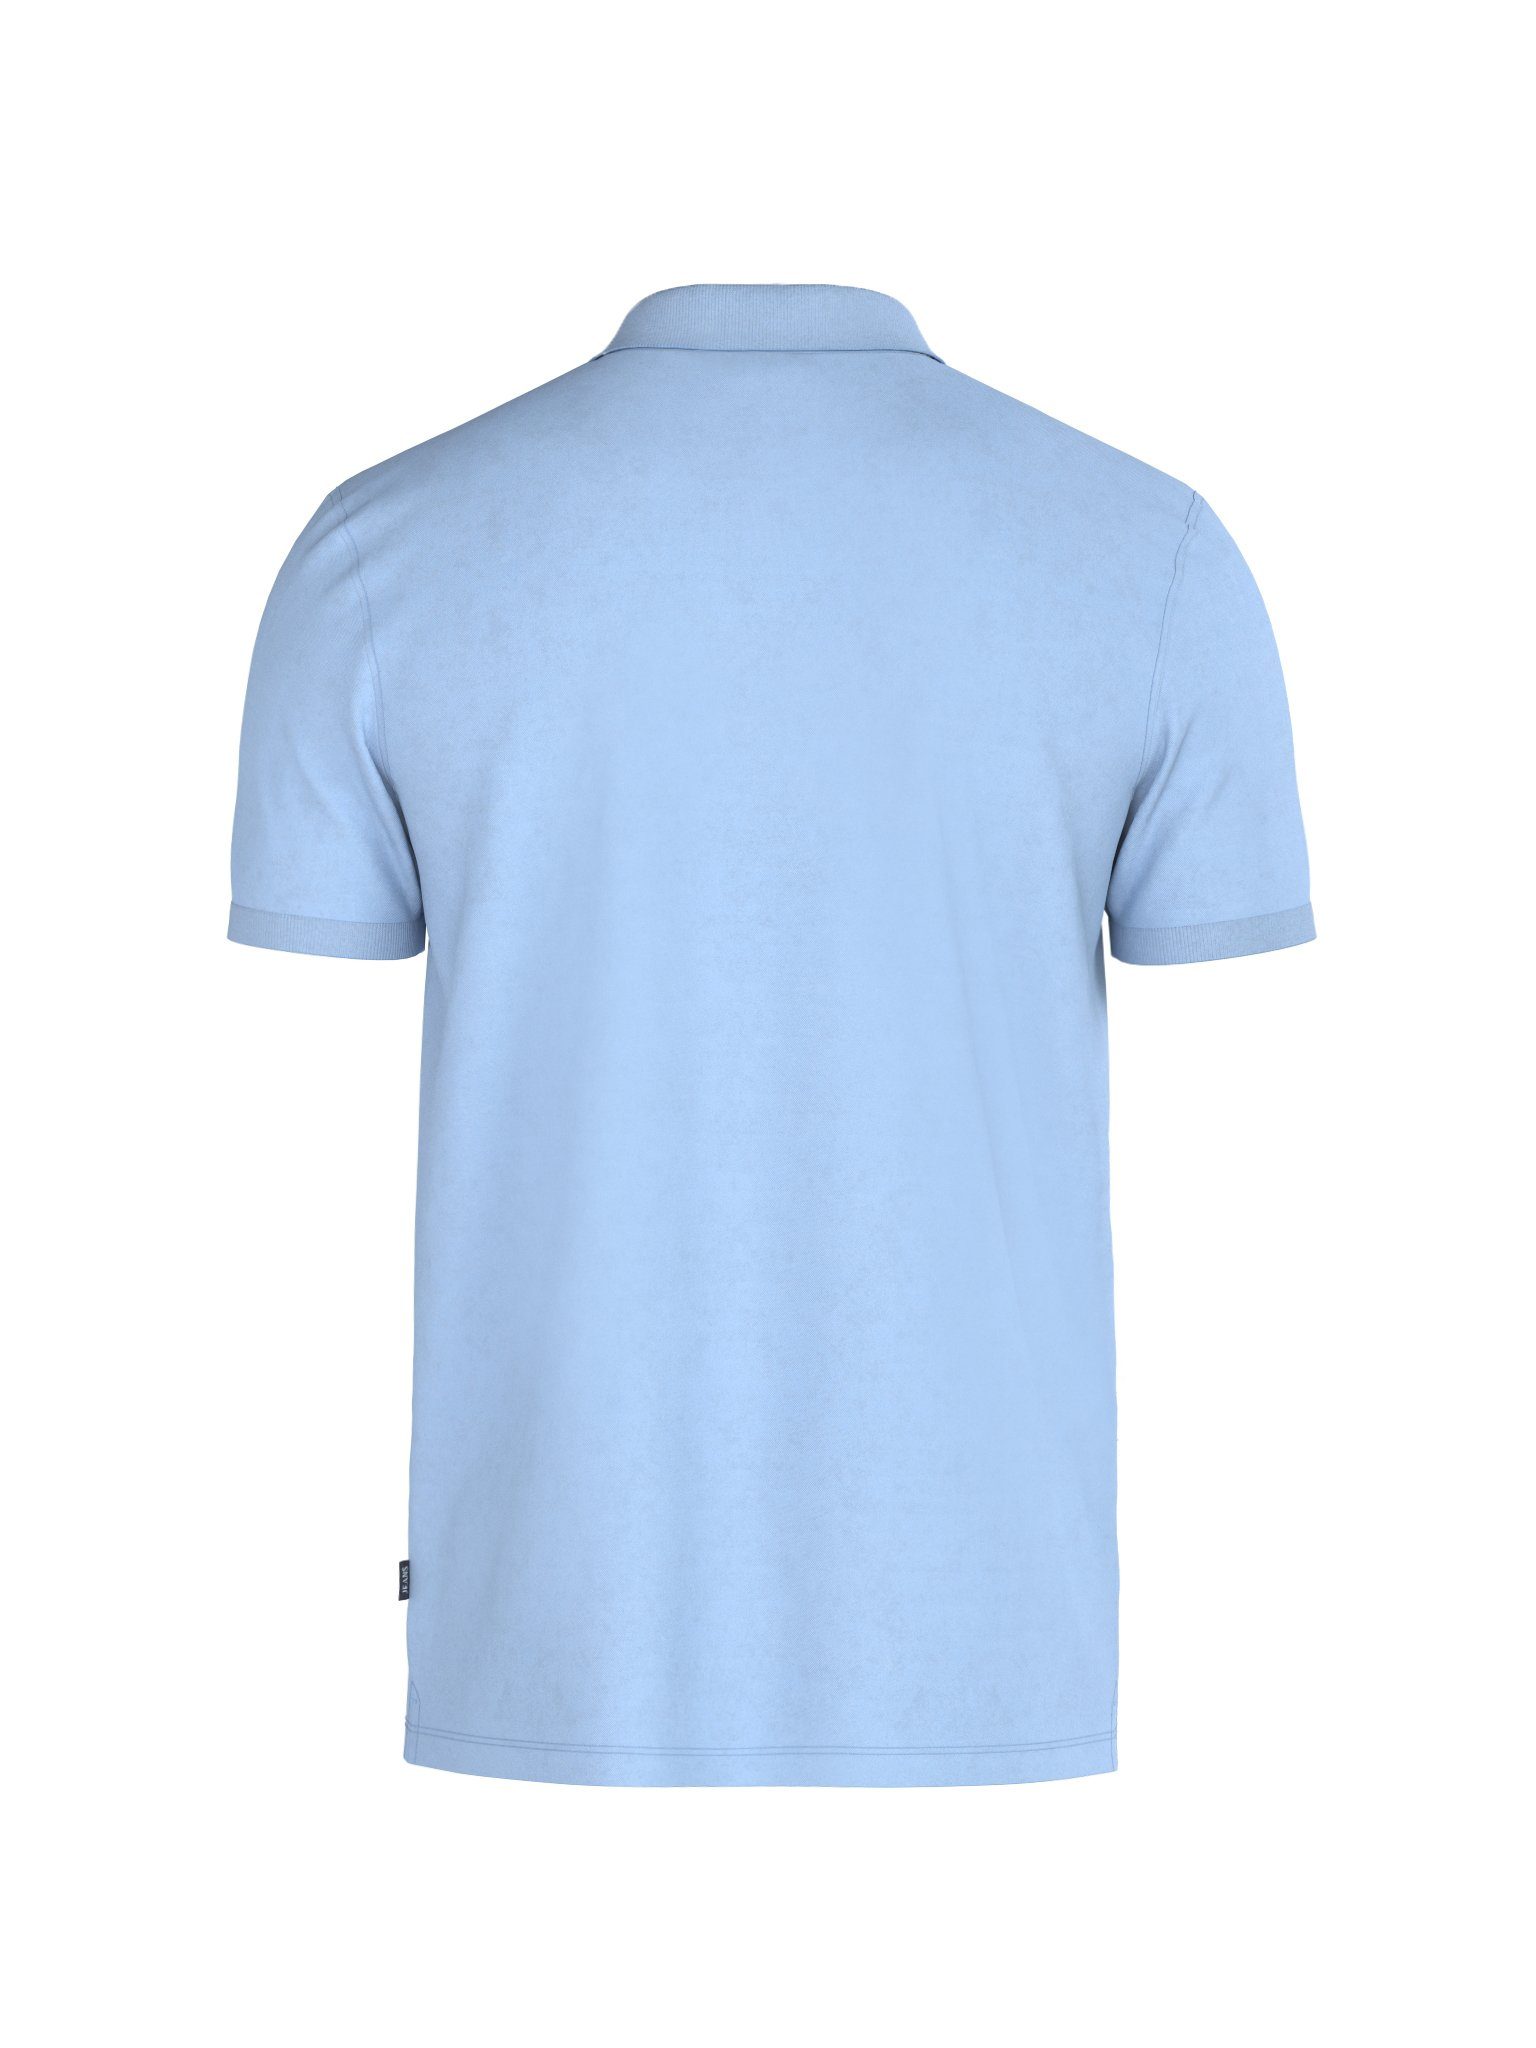 Joop Jeans Poloshirt JJJ-02Ambrosio blau Logo-Stitching tonigem mit